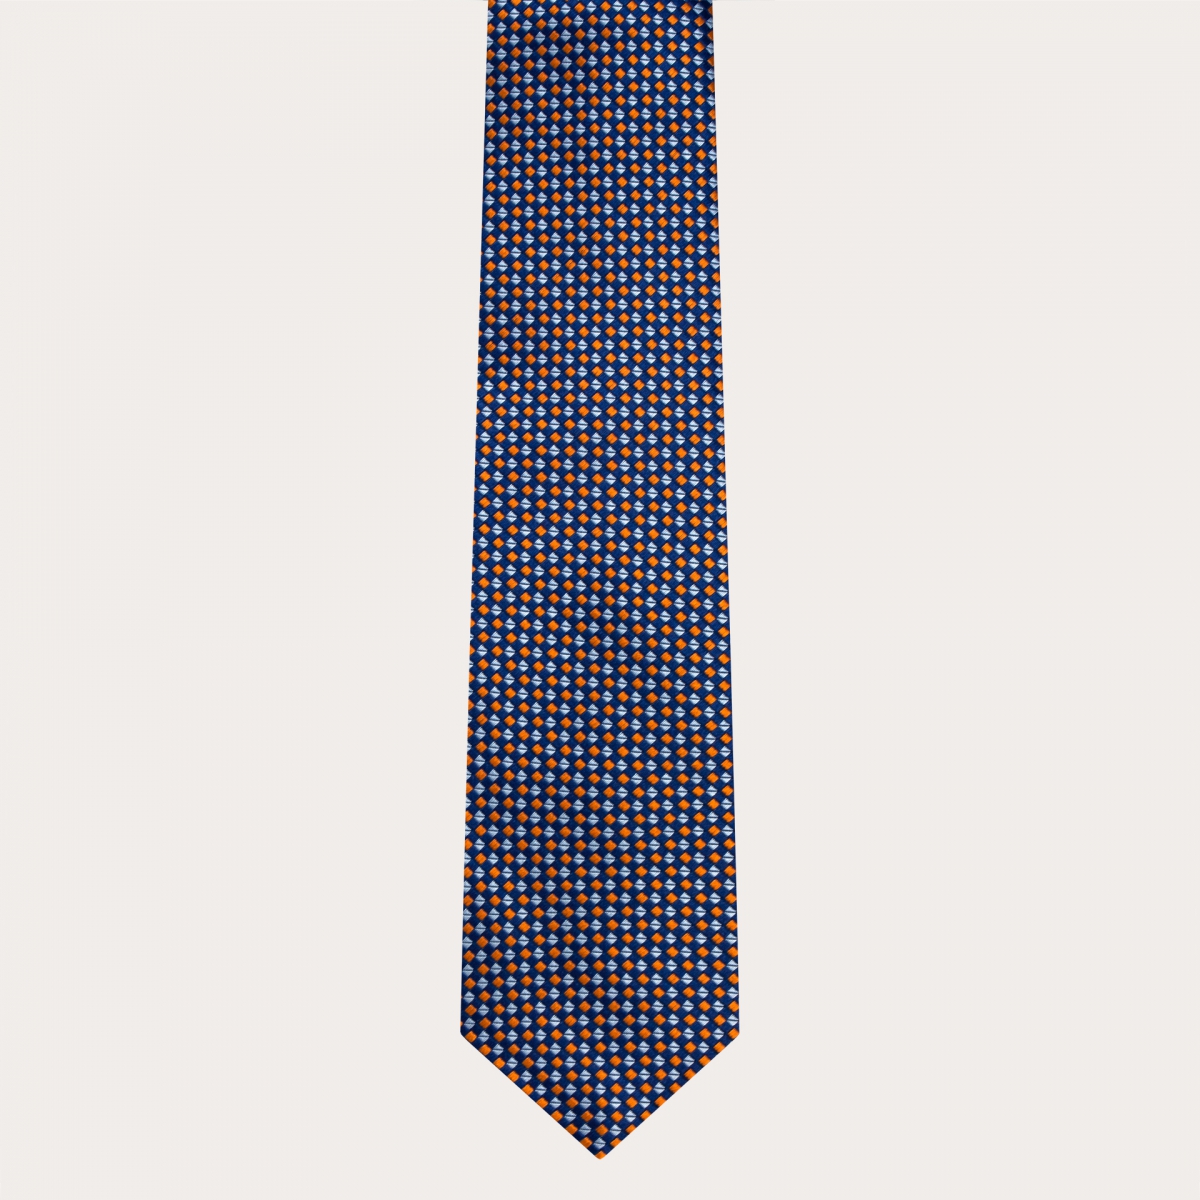 Cravatta in seta jacquard, motivo multicolor